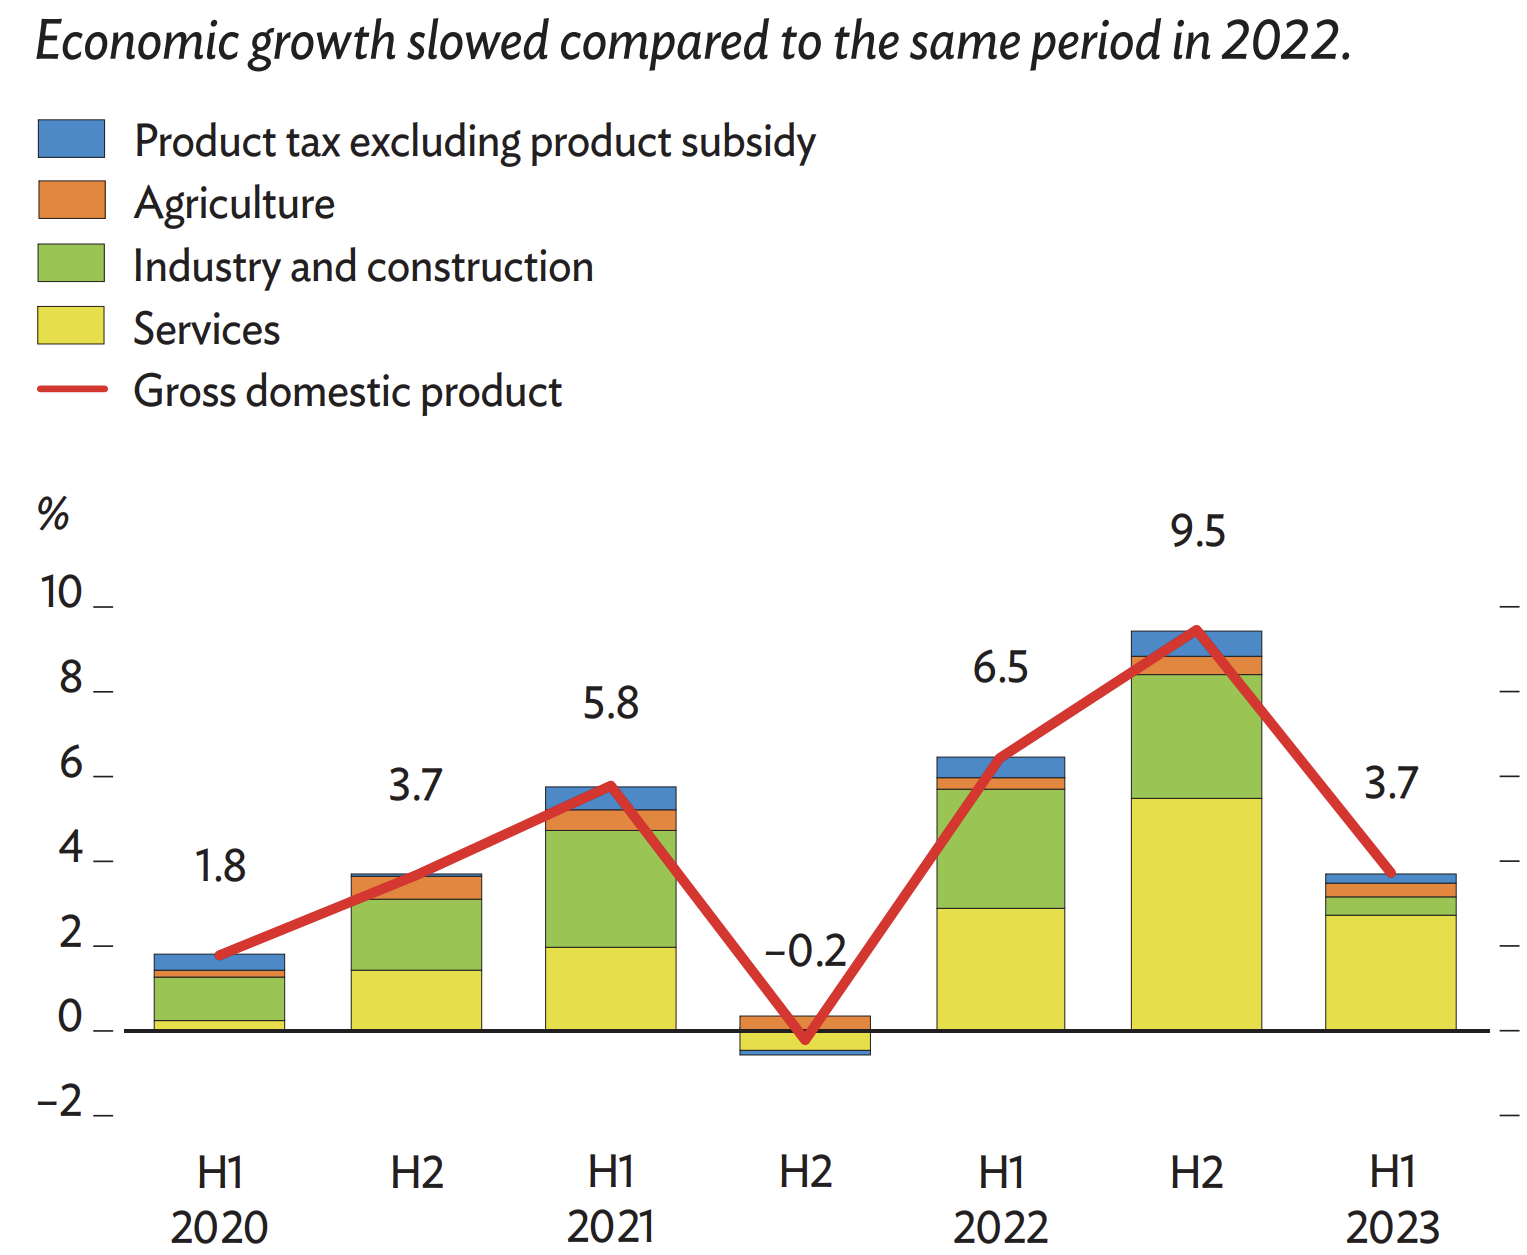 Kinh tế tăng trưởng chậm hơn kỳ vọng trong nửa đầu năm 2023 so với cùng kỳ năm 2022